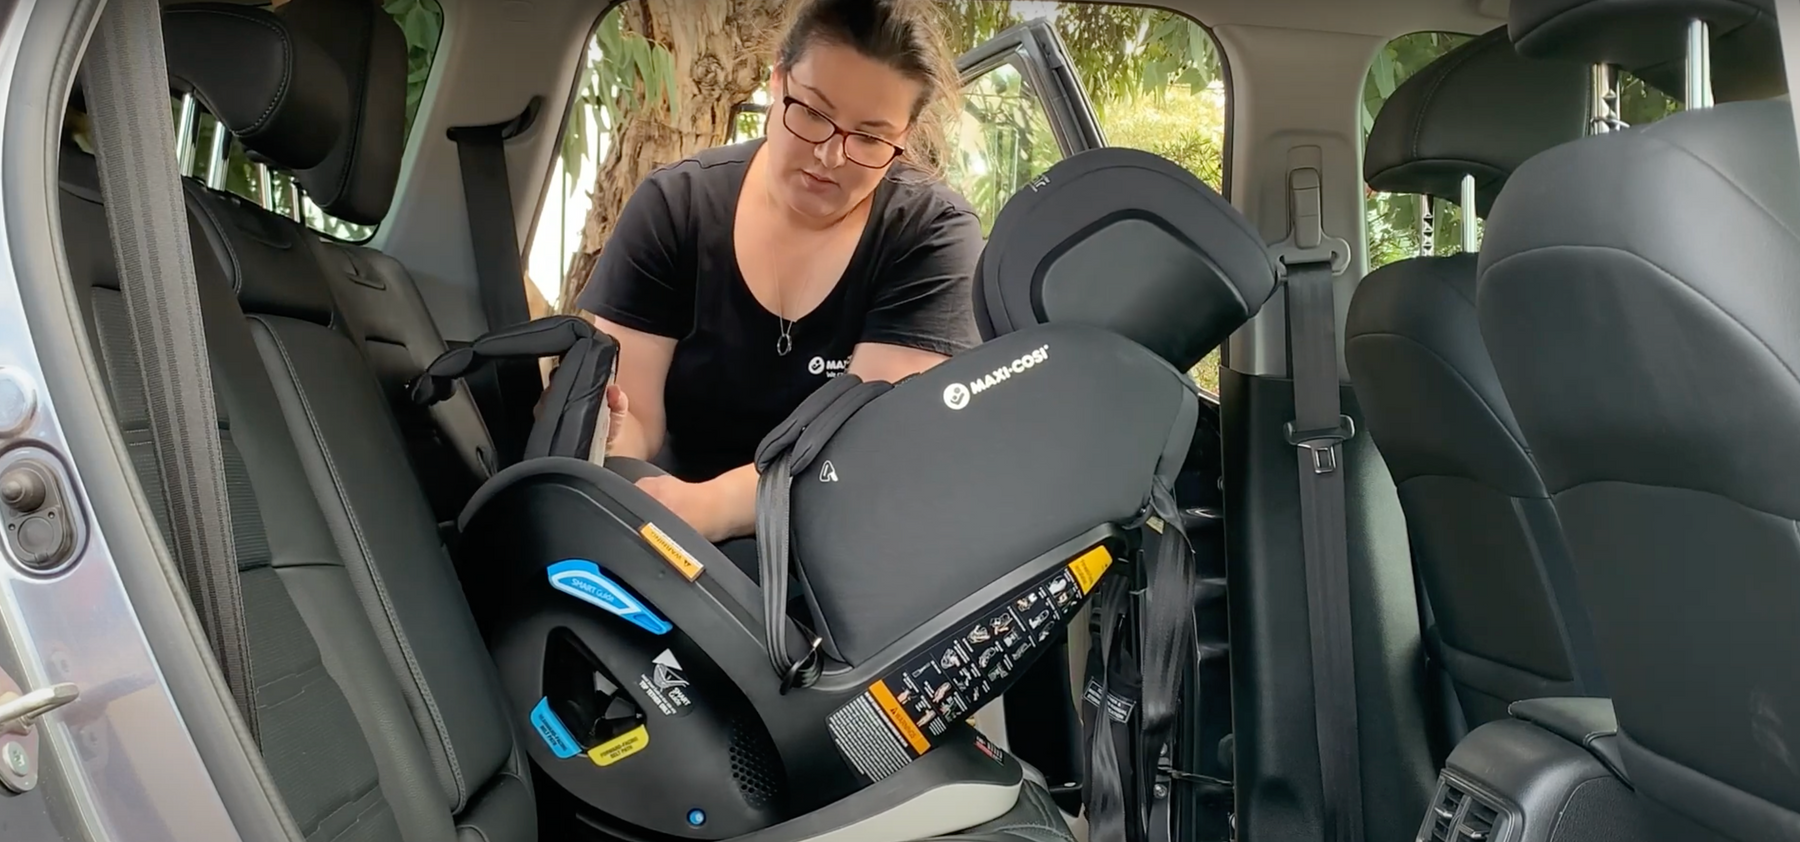 Maxi Cosi Pria / Pria LX Compact Convertible Car Seat Video Installation Tips